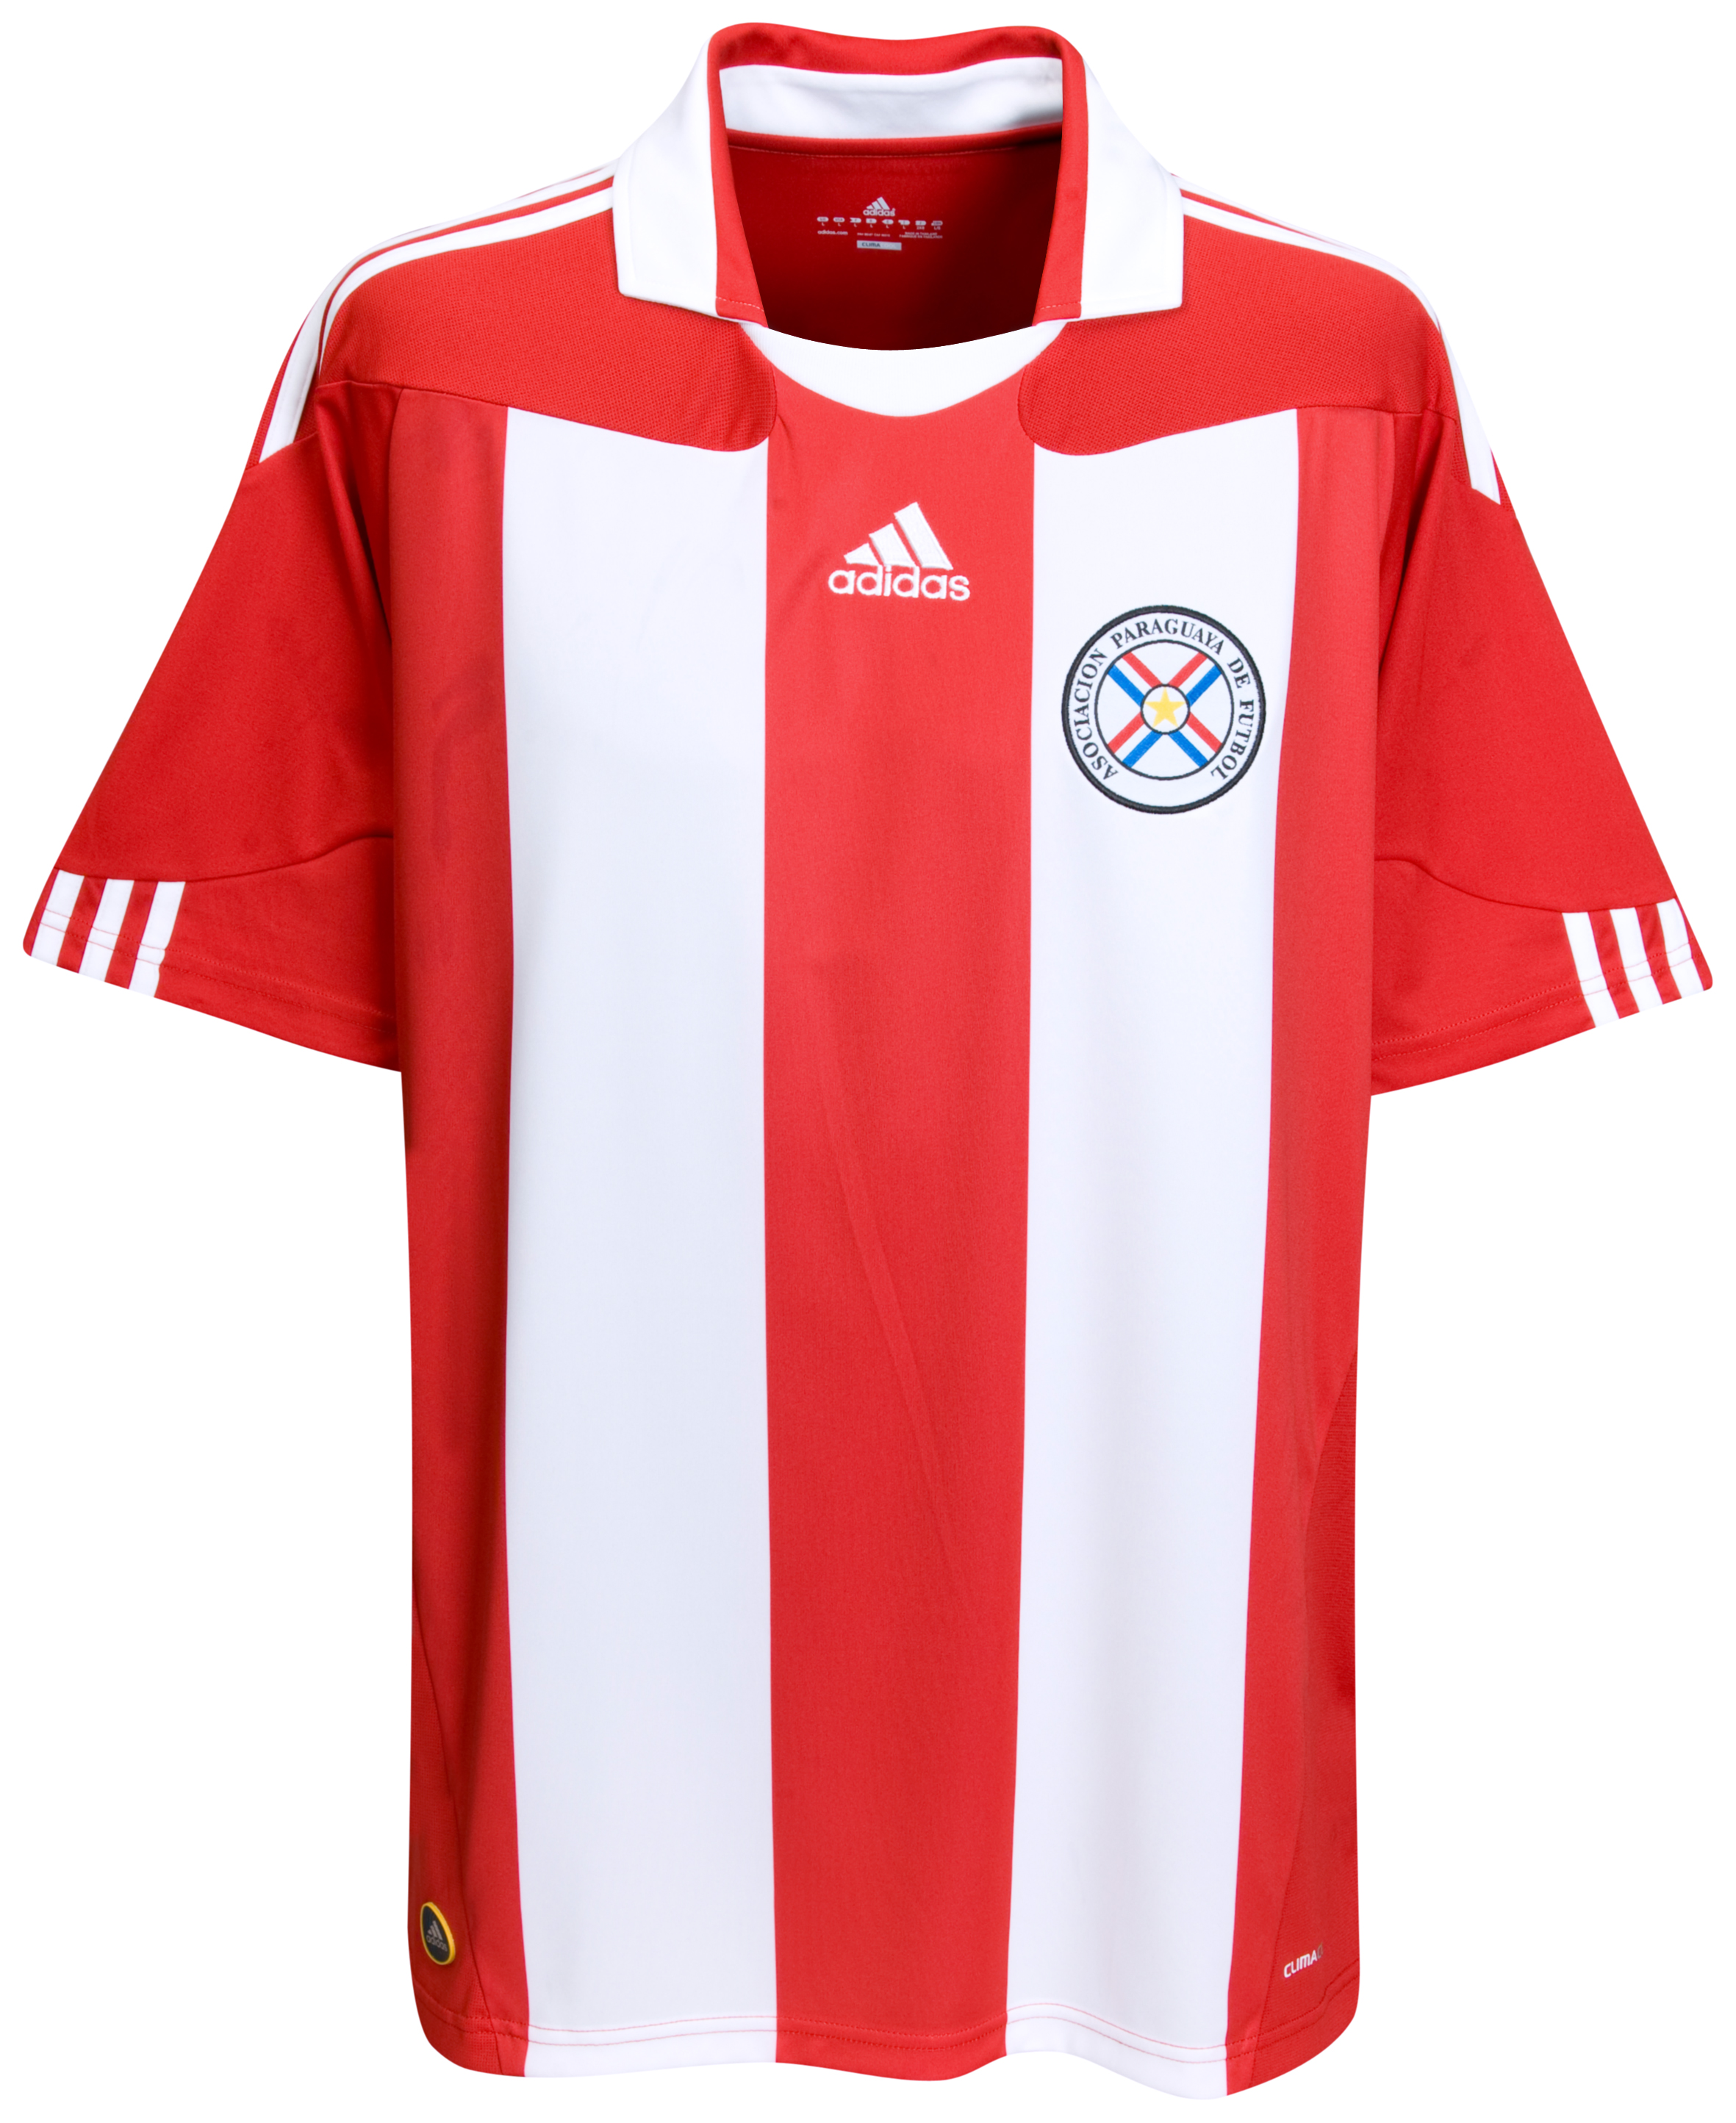 ملابس المنتخبات لكأس العالم ‎(2010)‎ Kb-63747